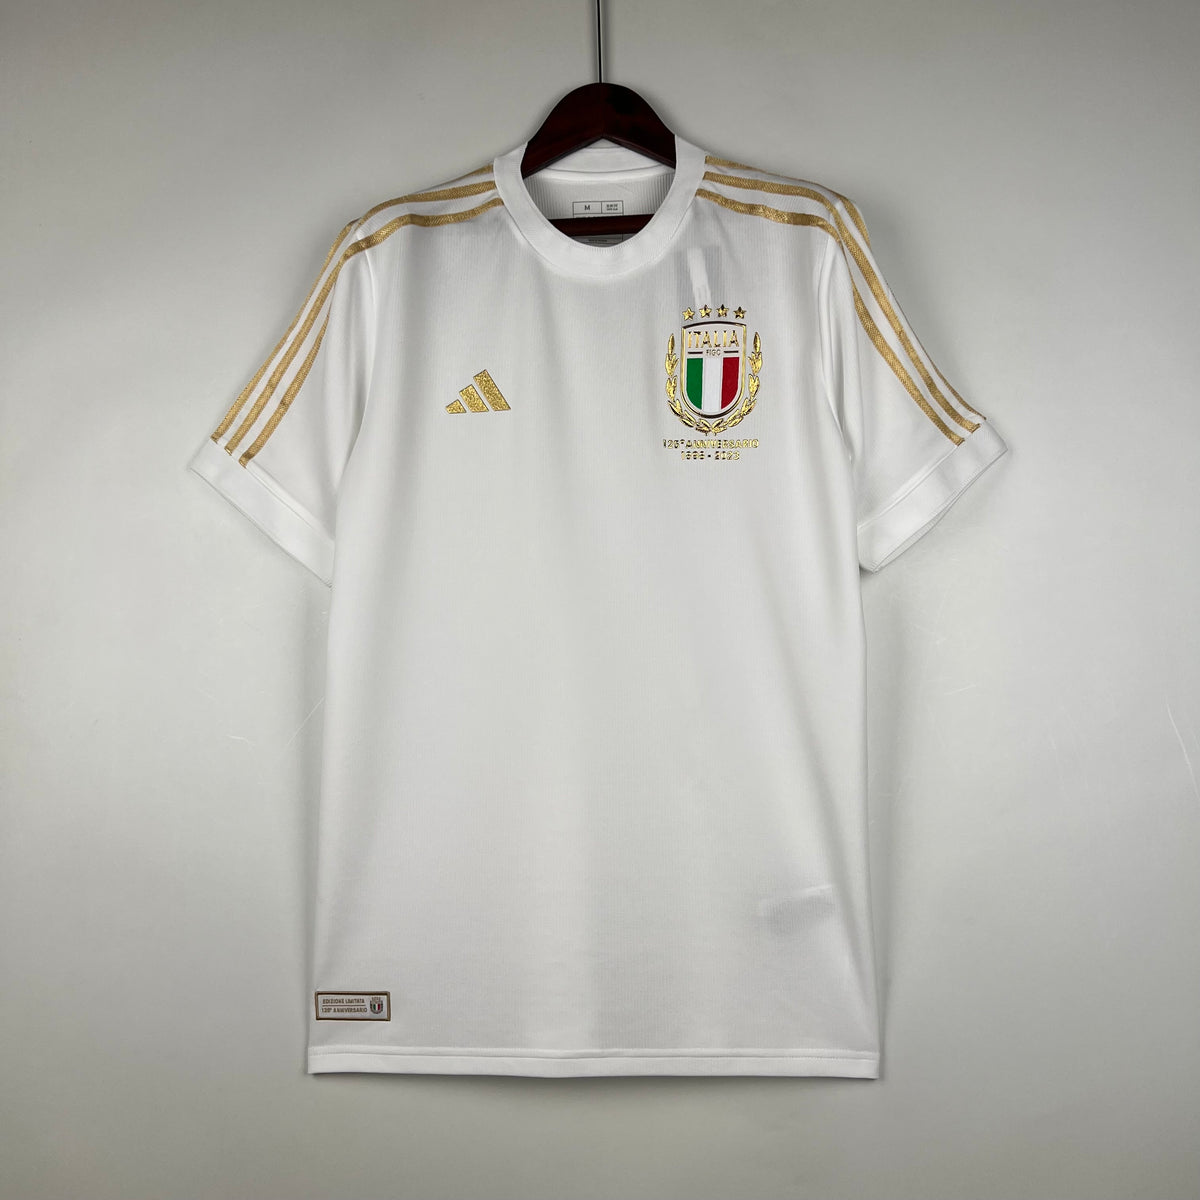 Italy 125th Anniversary Football Jersey